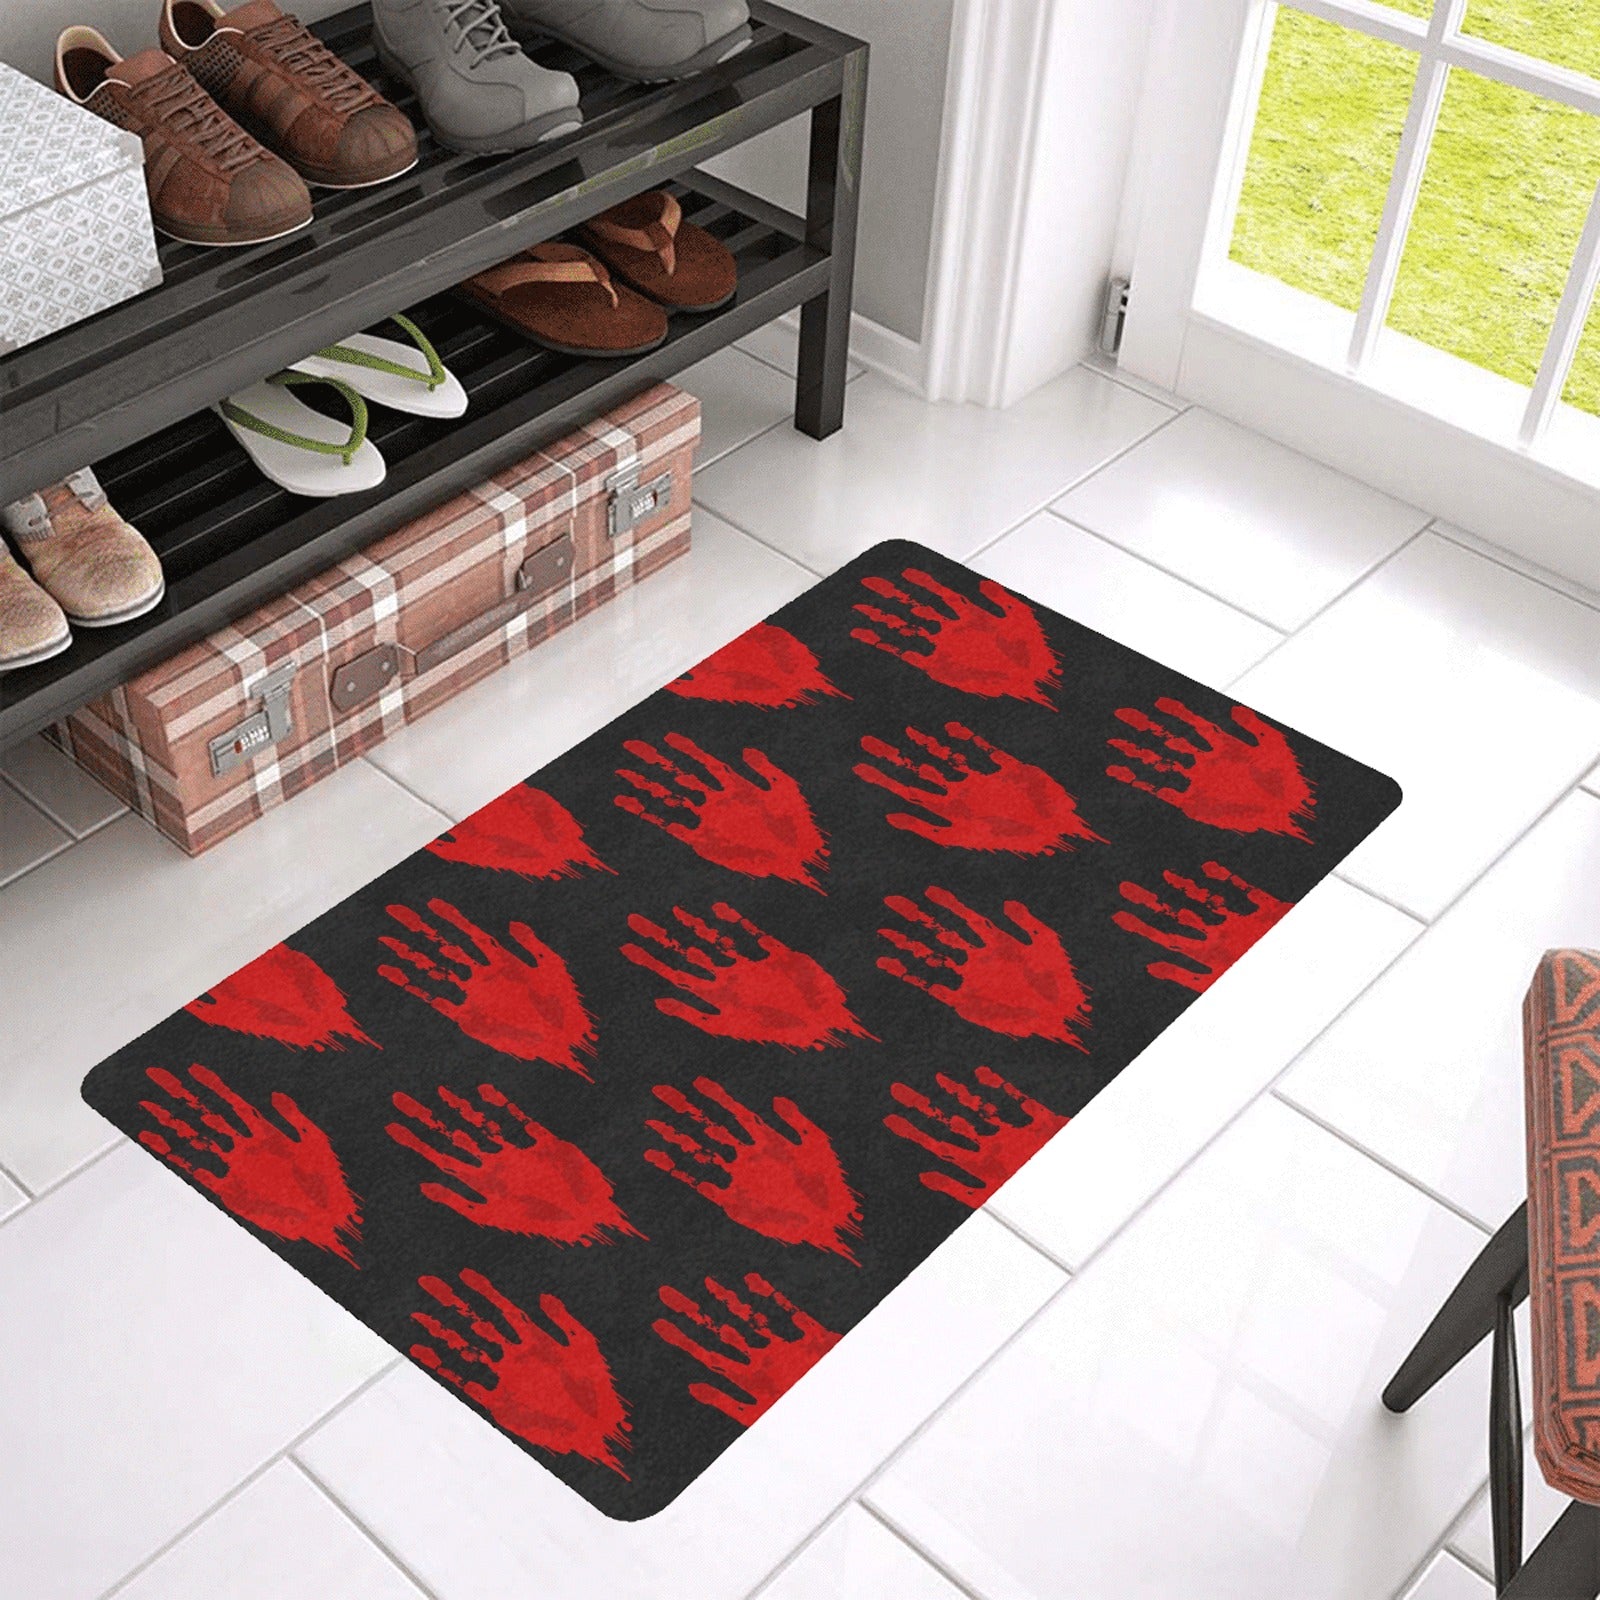 Bloody Hand Rubber Doormat 30"x18"